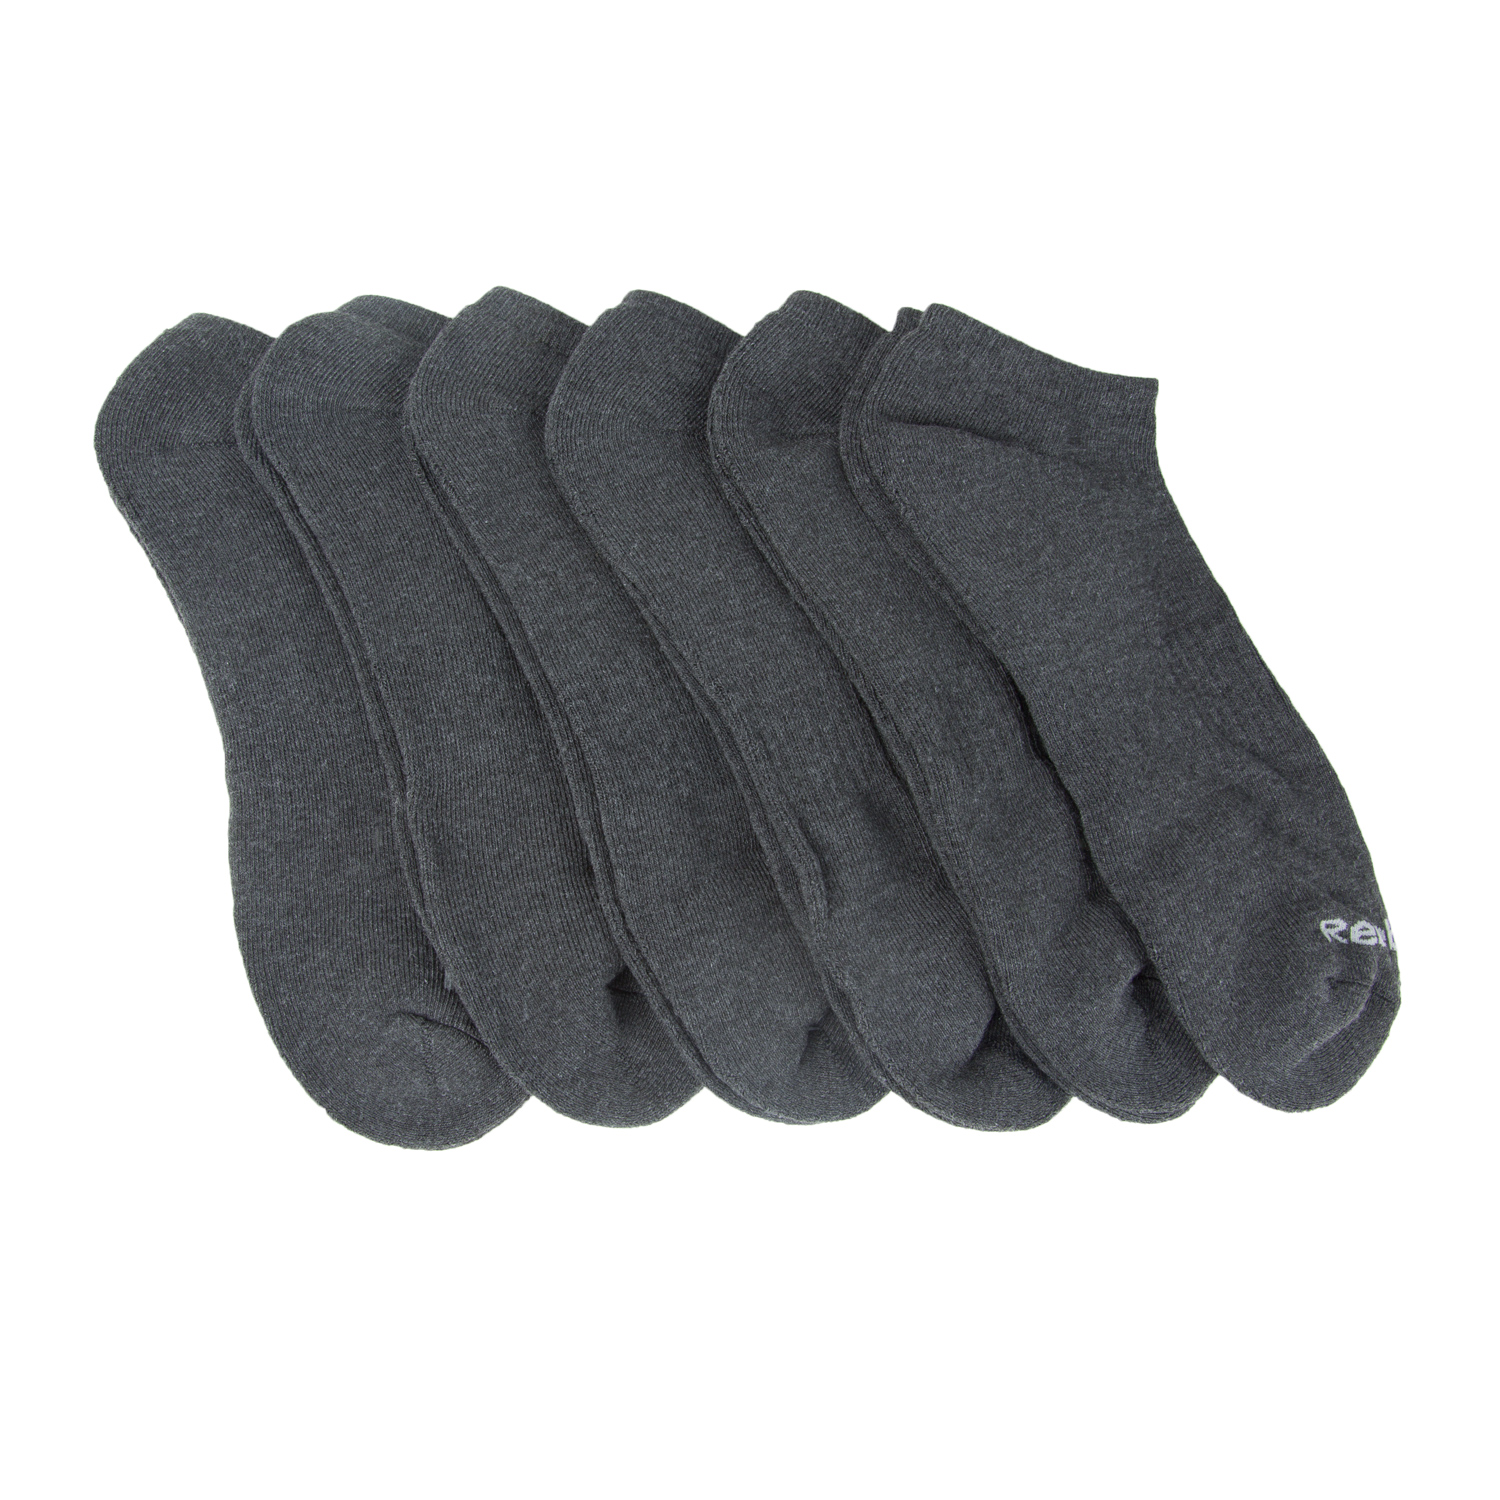 Reebok Men's 6 Pack XL Low Cut Socks Sz 12.5-16 NEW